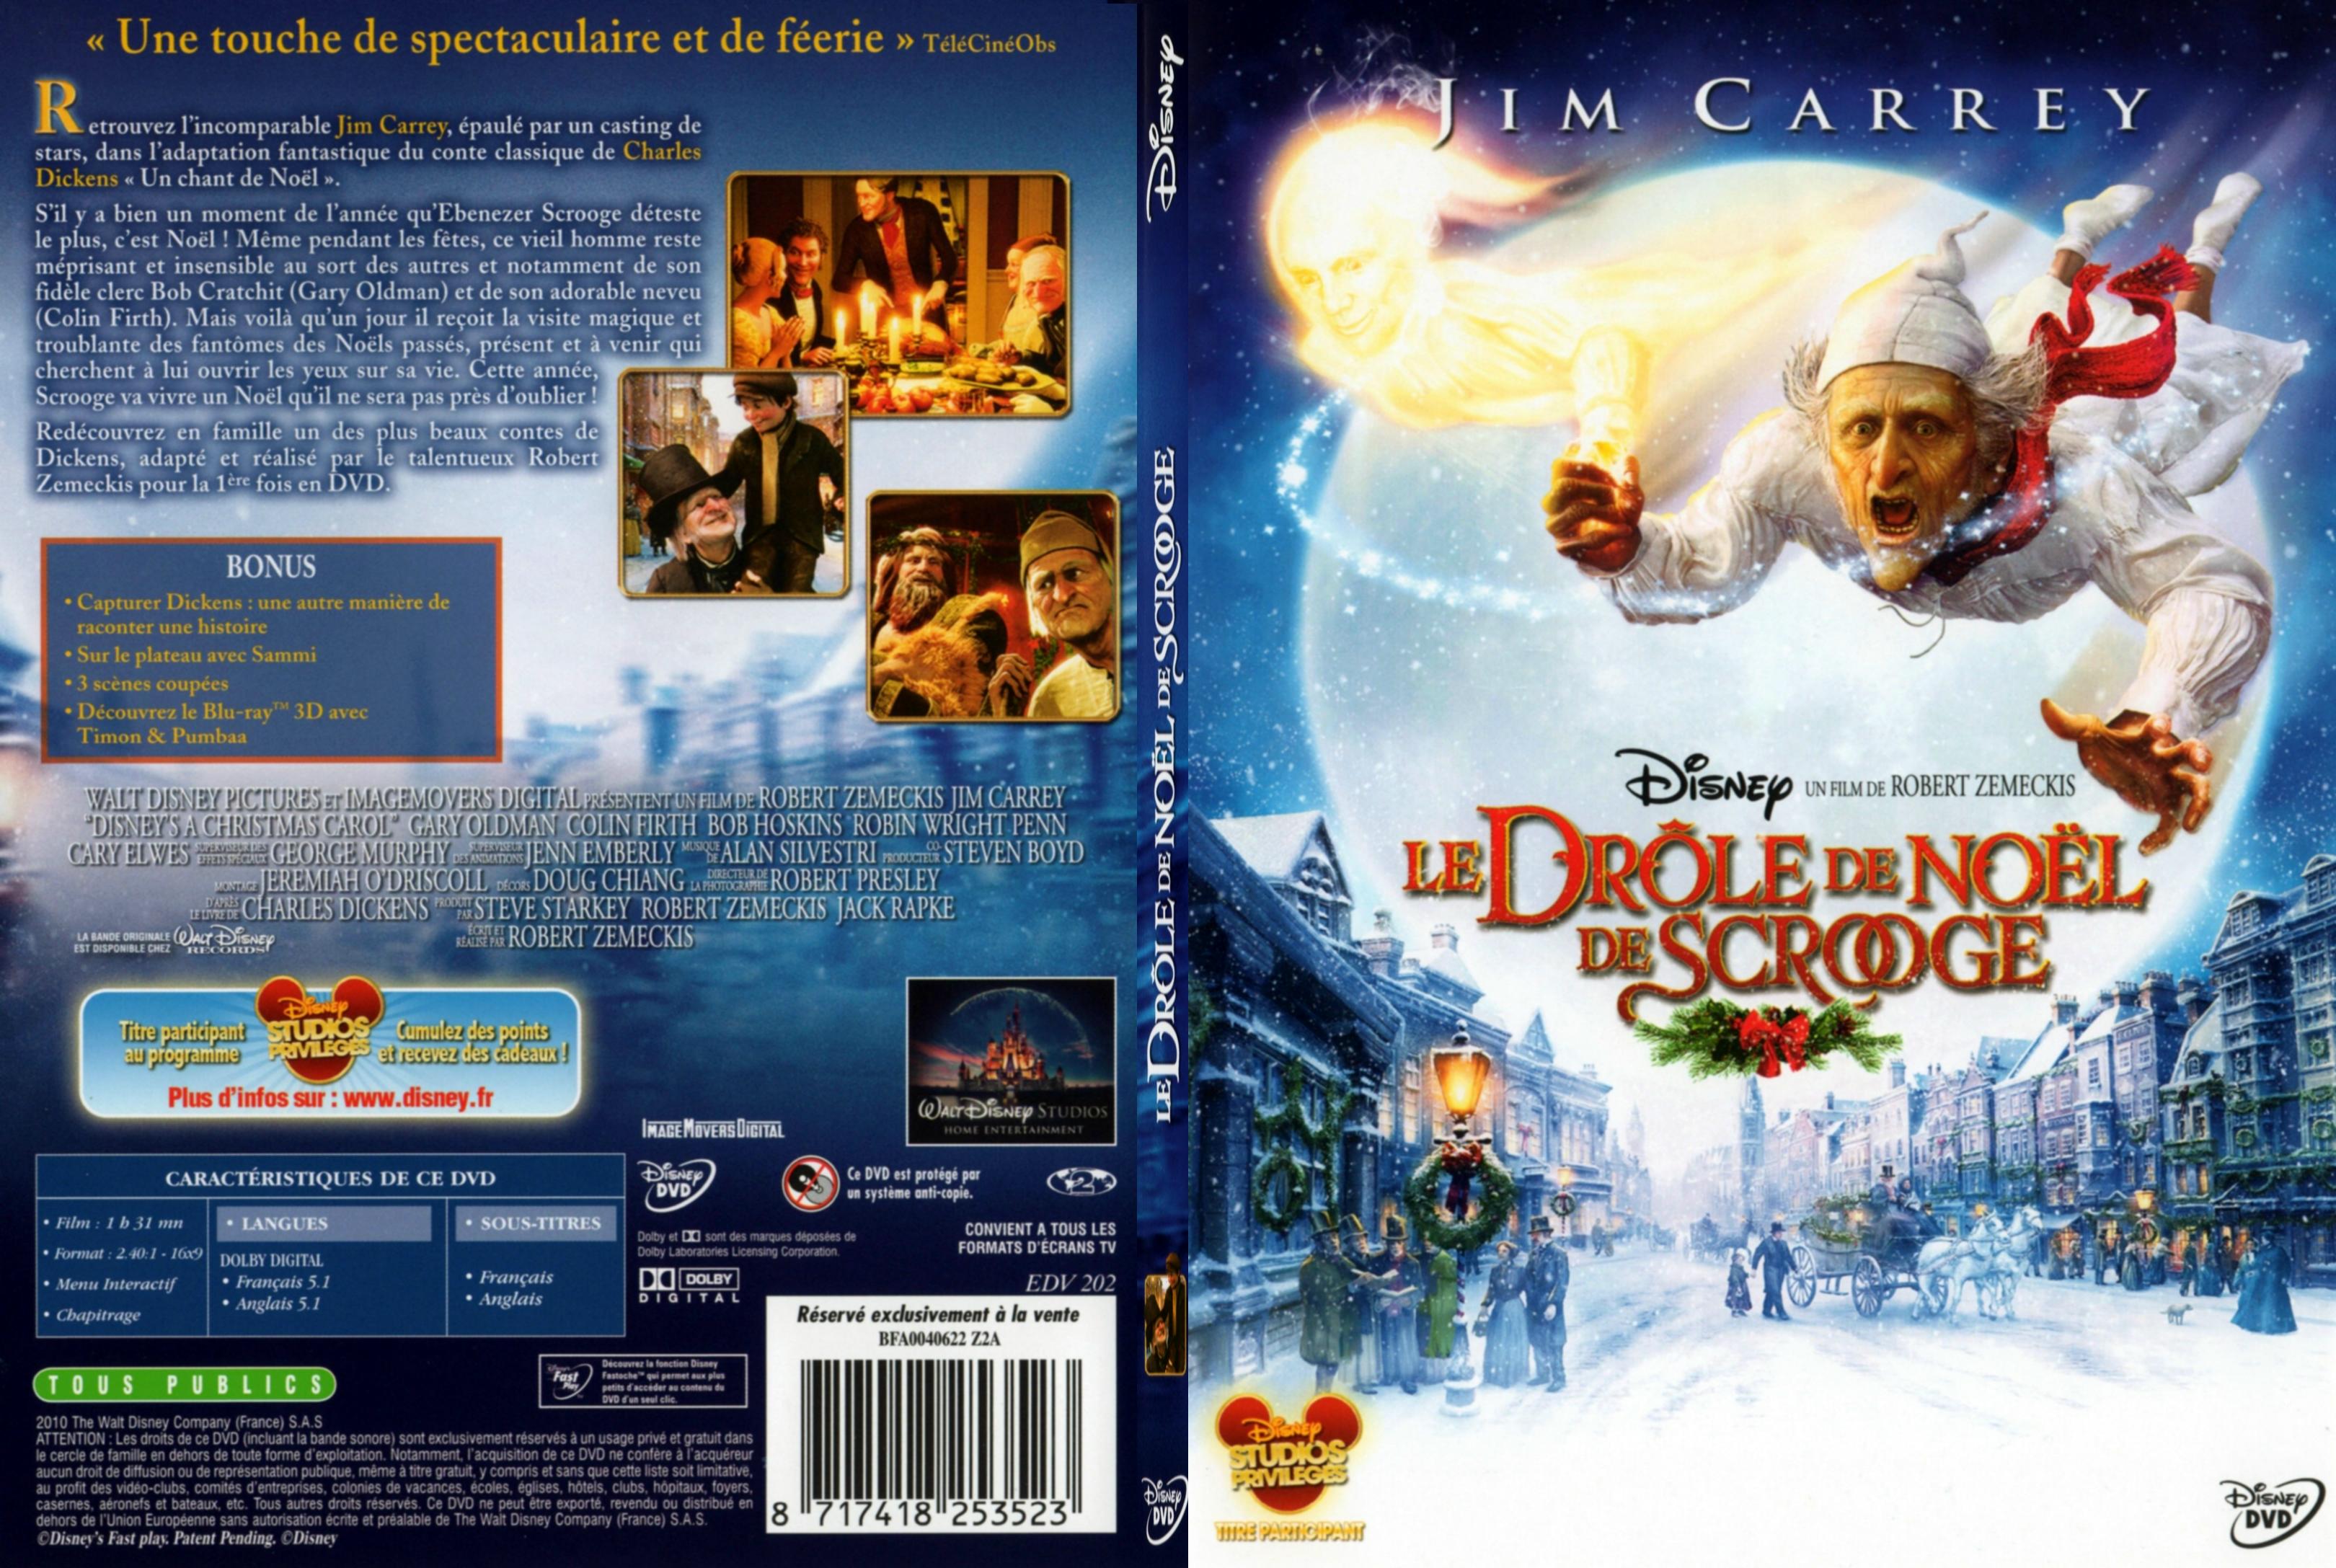 Jaquette DVD de Le drole de Noel de Scrooge - SLIM - Cinéma Passion